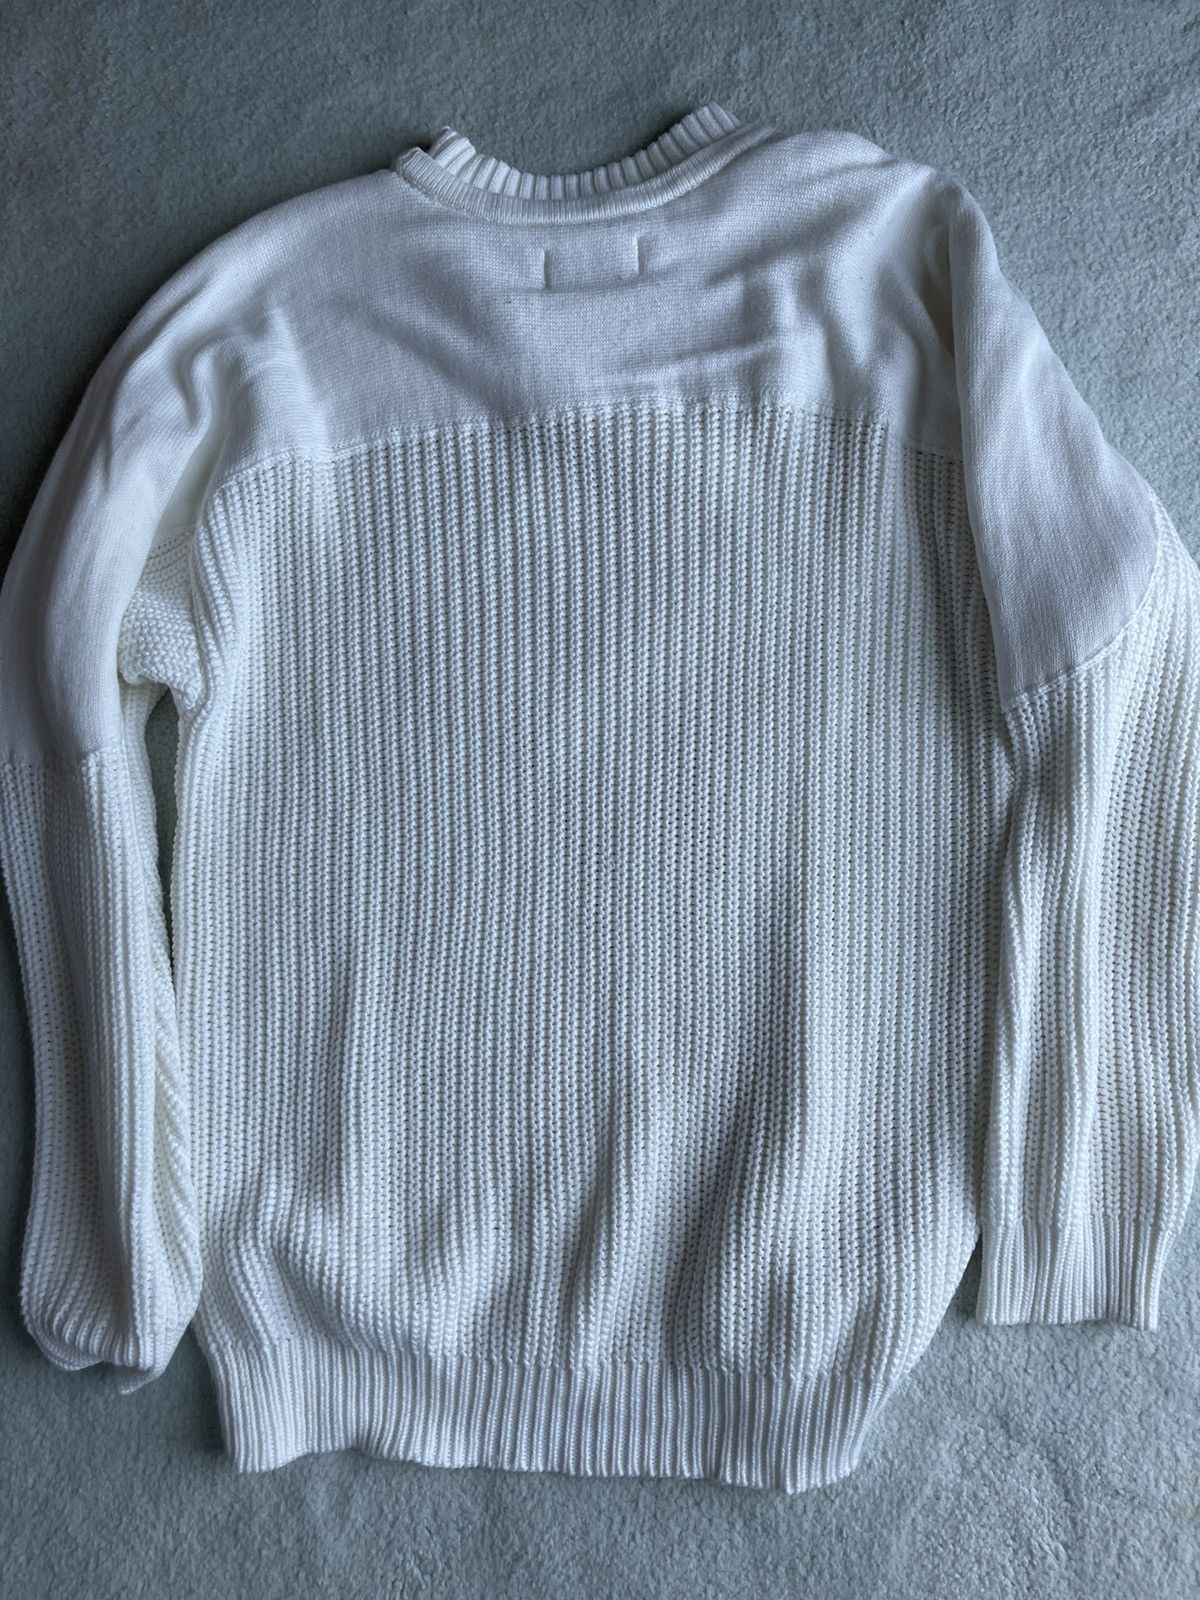 Palace Palace Sweater Size US M / EU 48-50 / 2 - 5 Preview